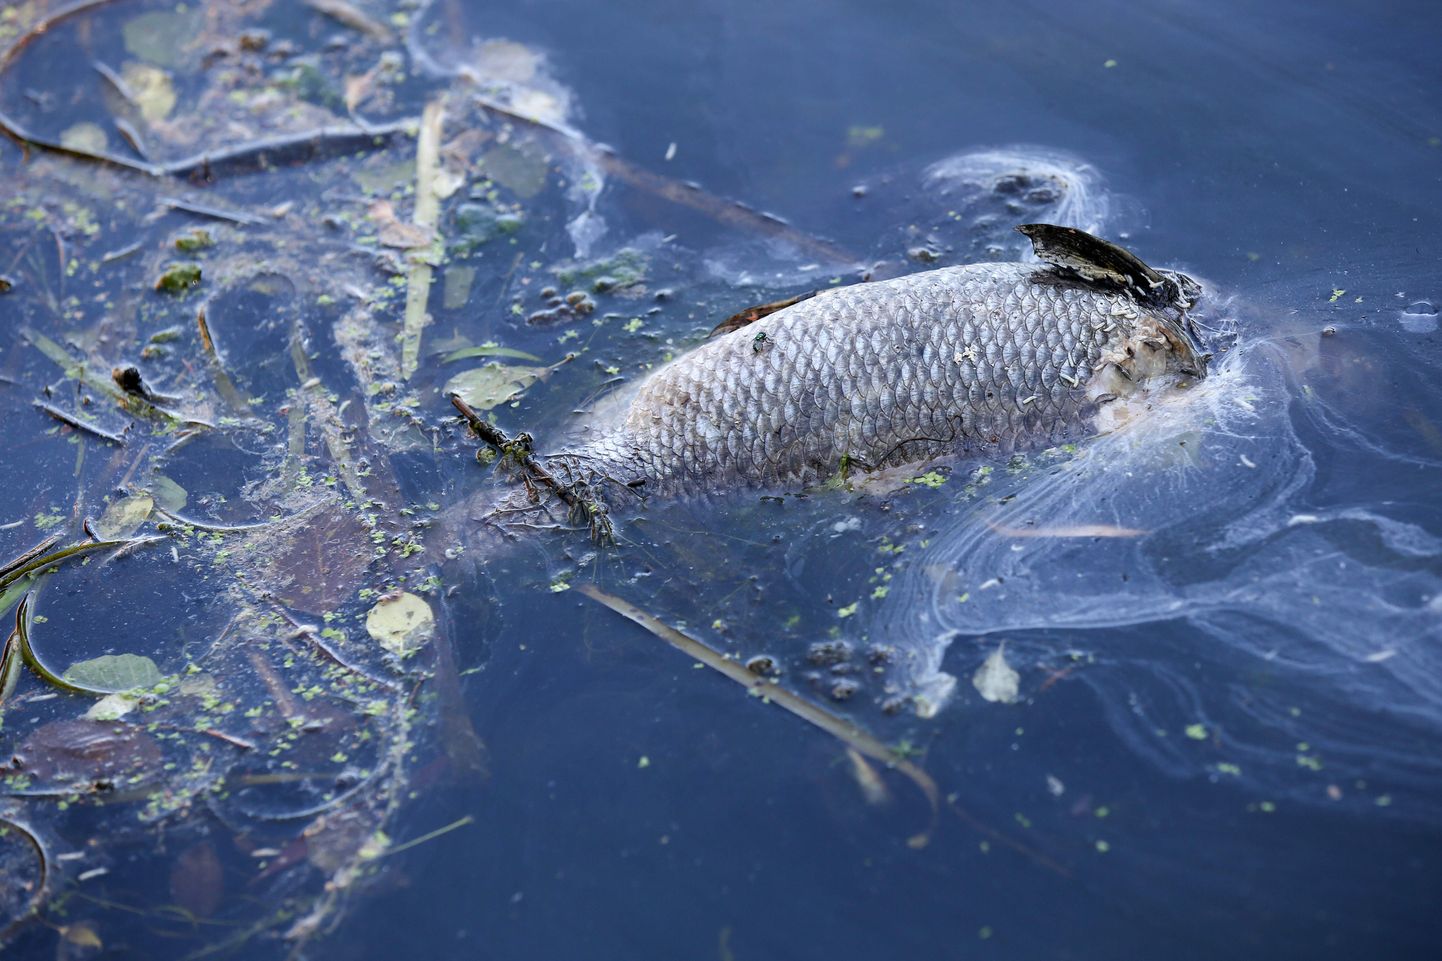 Мертвая рыба в реке Альстер, Гамбург, Германия, умершая от недостатка кислорода в воде.